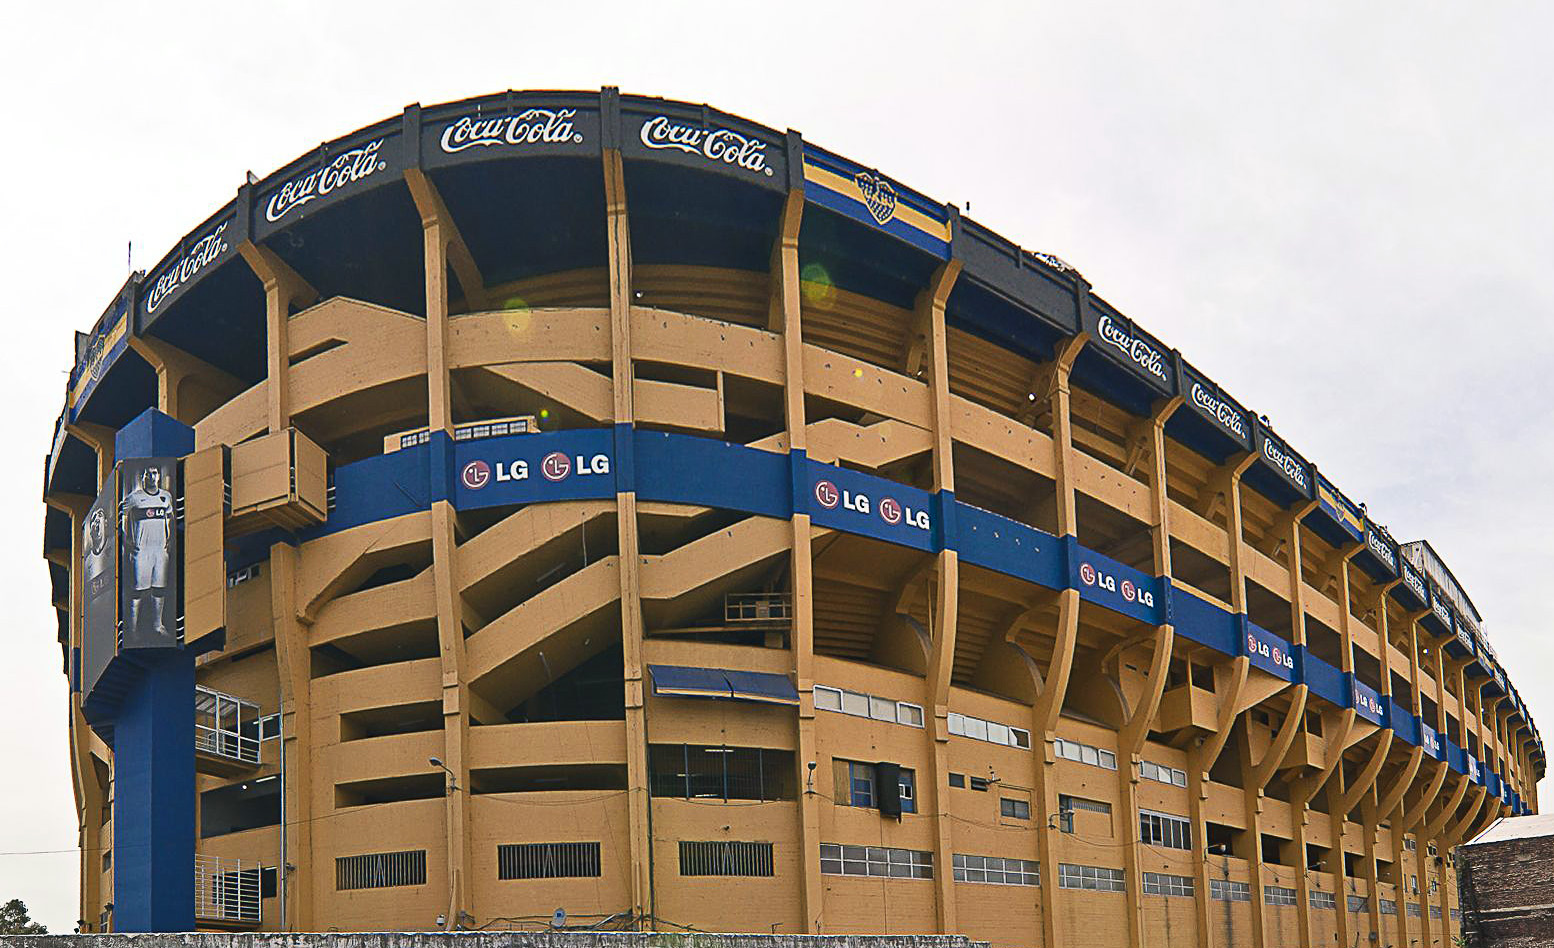 'The Chocolate Box' stadium